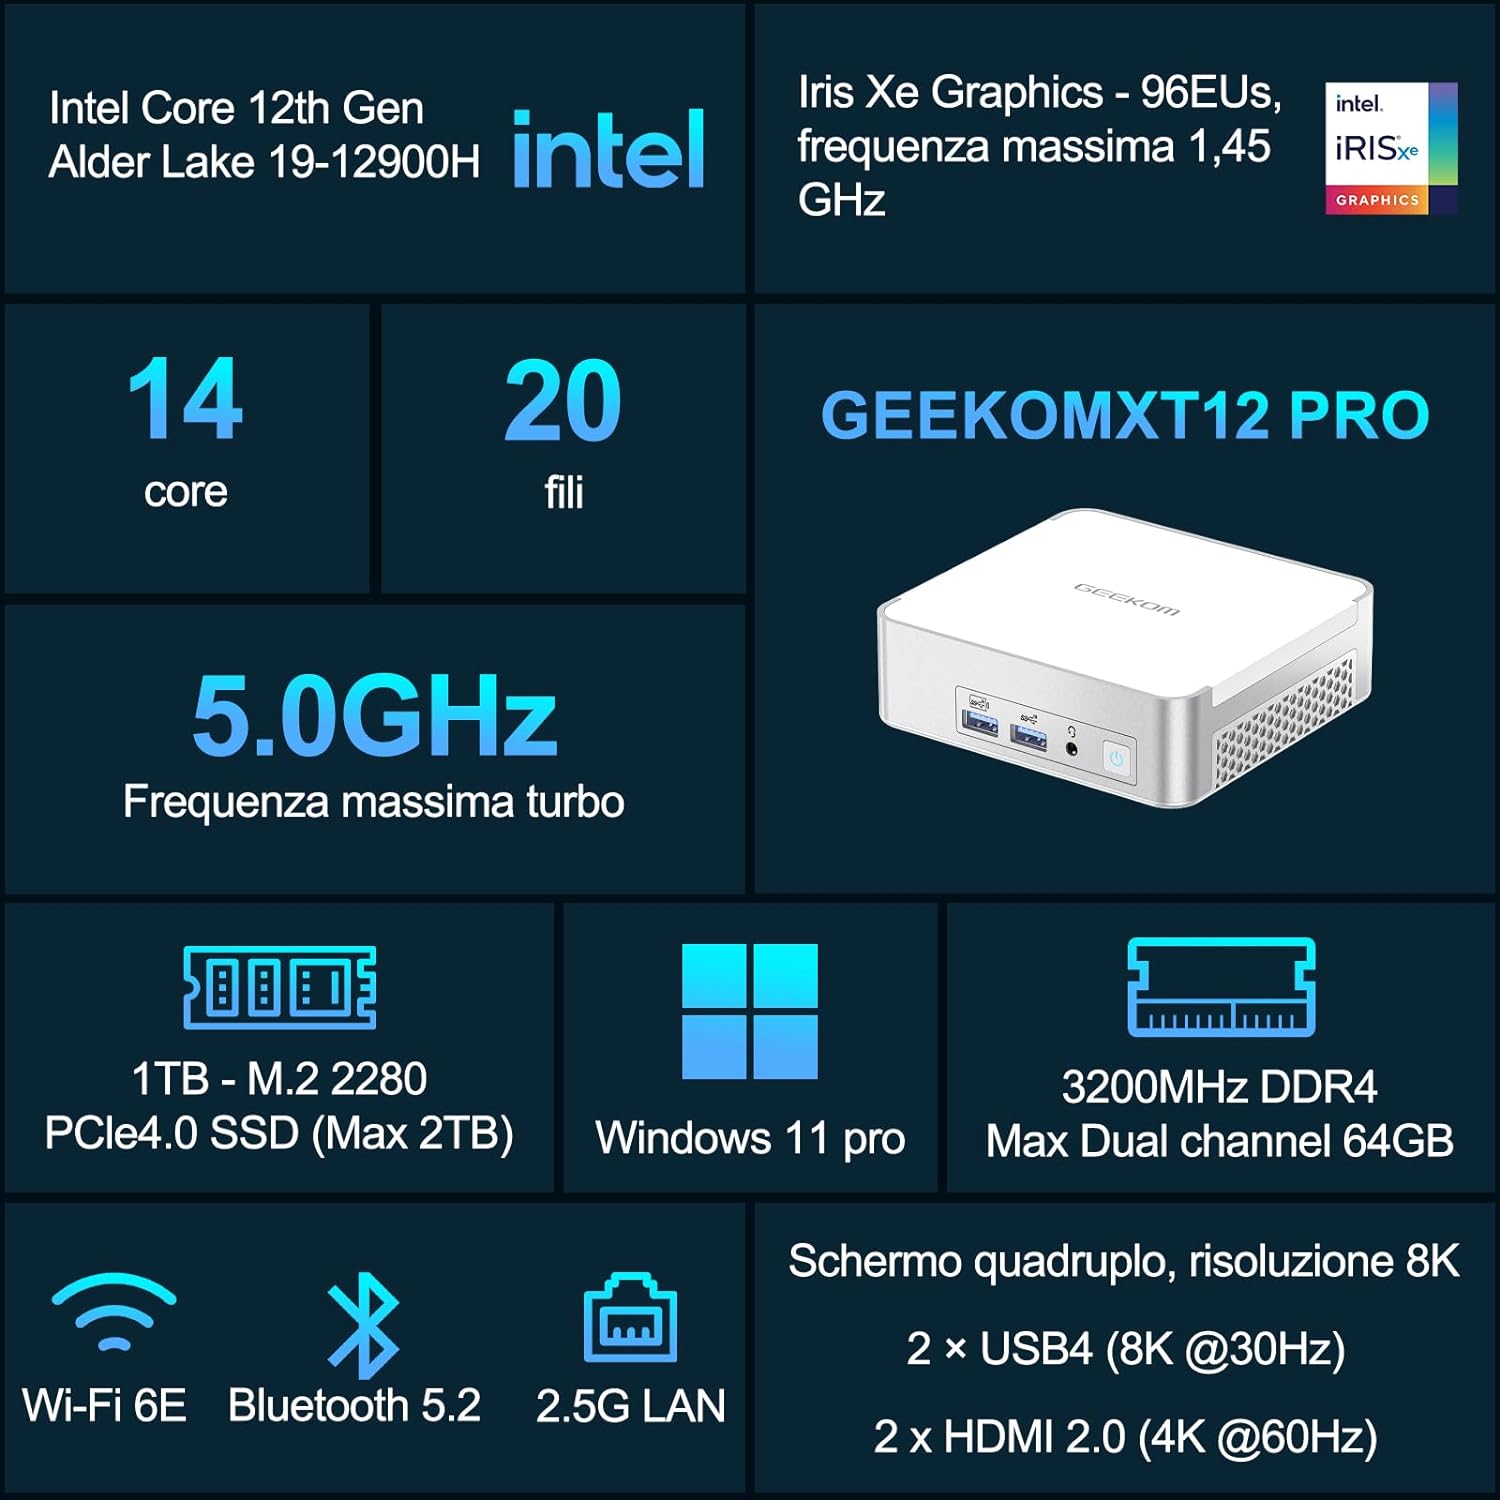 Crolla il prezzo su Amazon del Mini PC GEEKOM XT12 Pro grazie a questo coupon